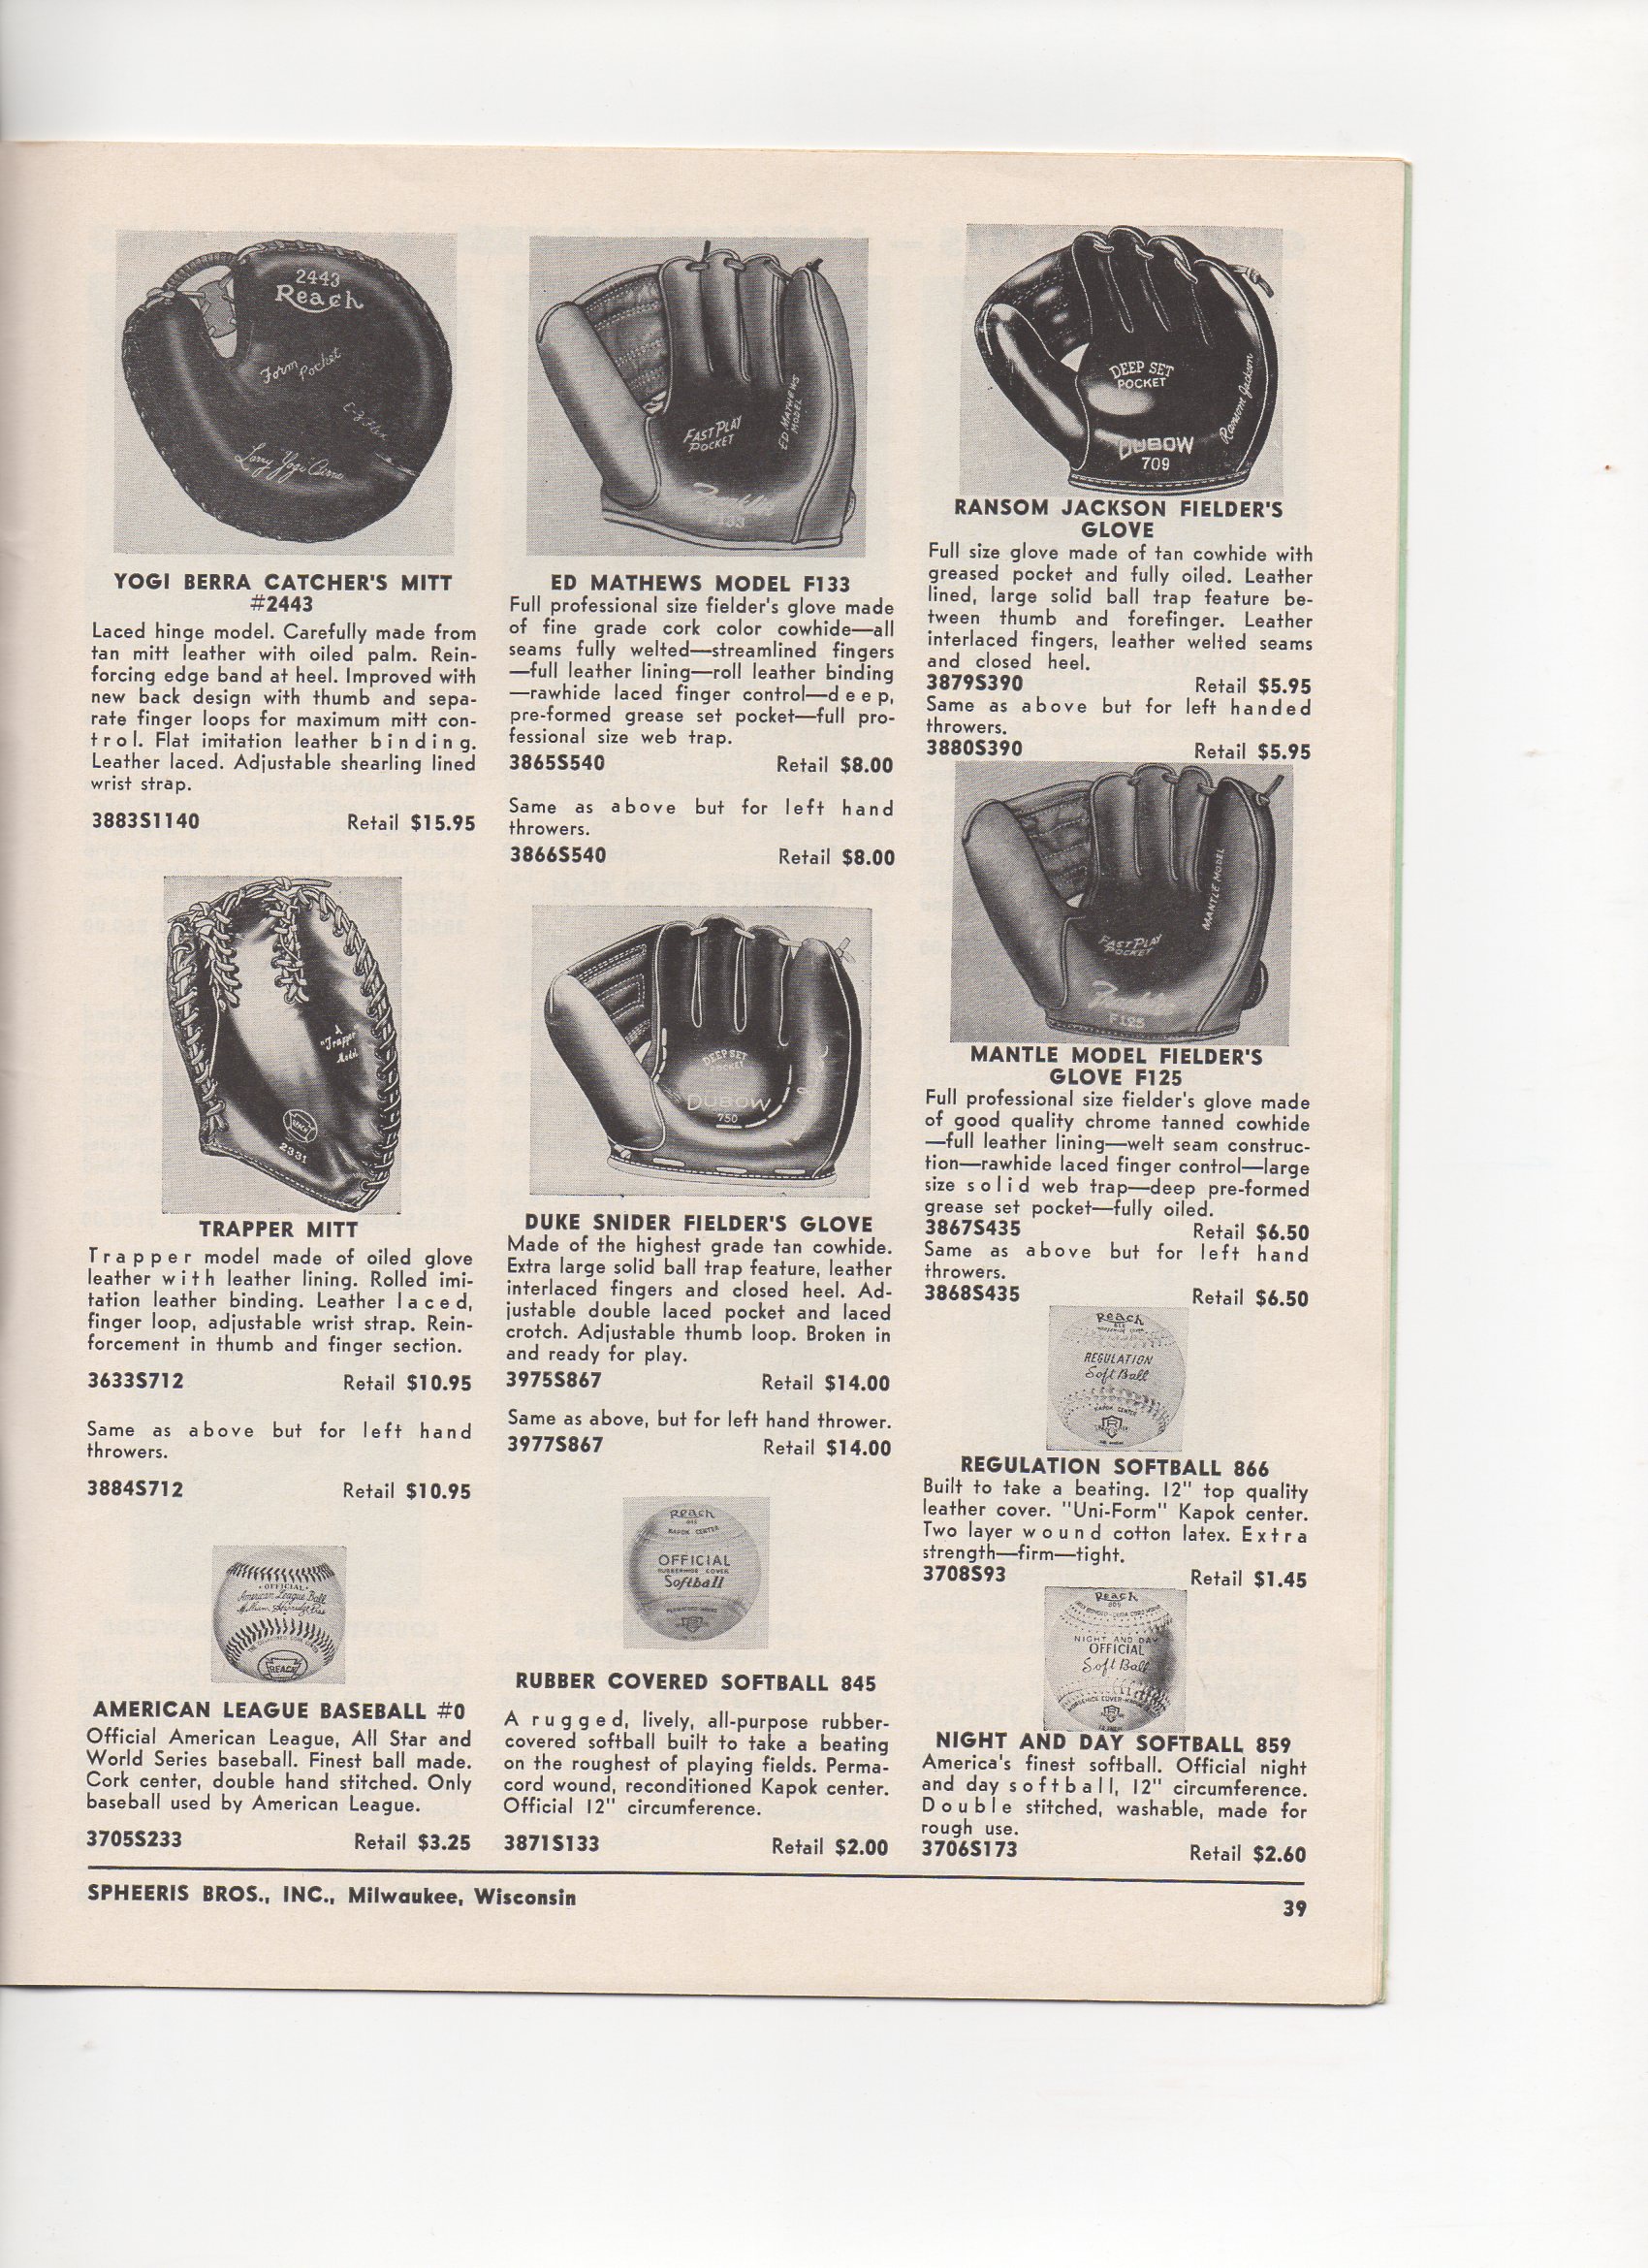 1956 spheeris bros. catalog, spring and summer no. 114